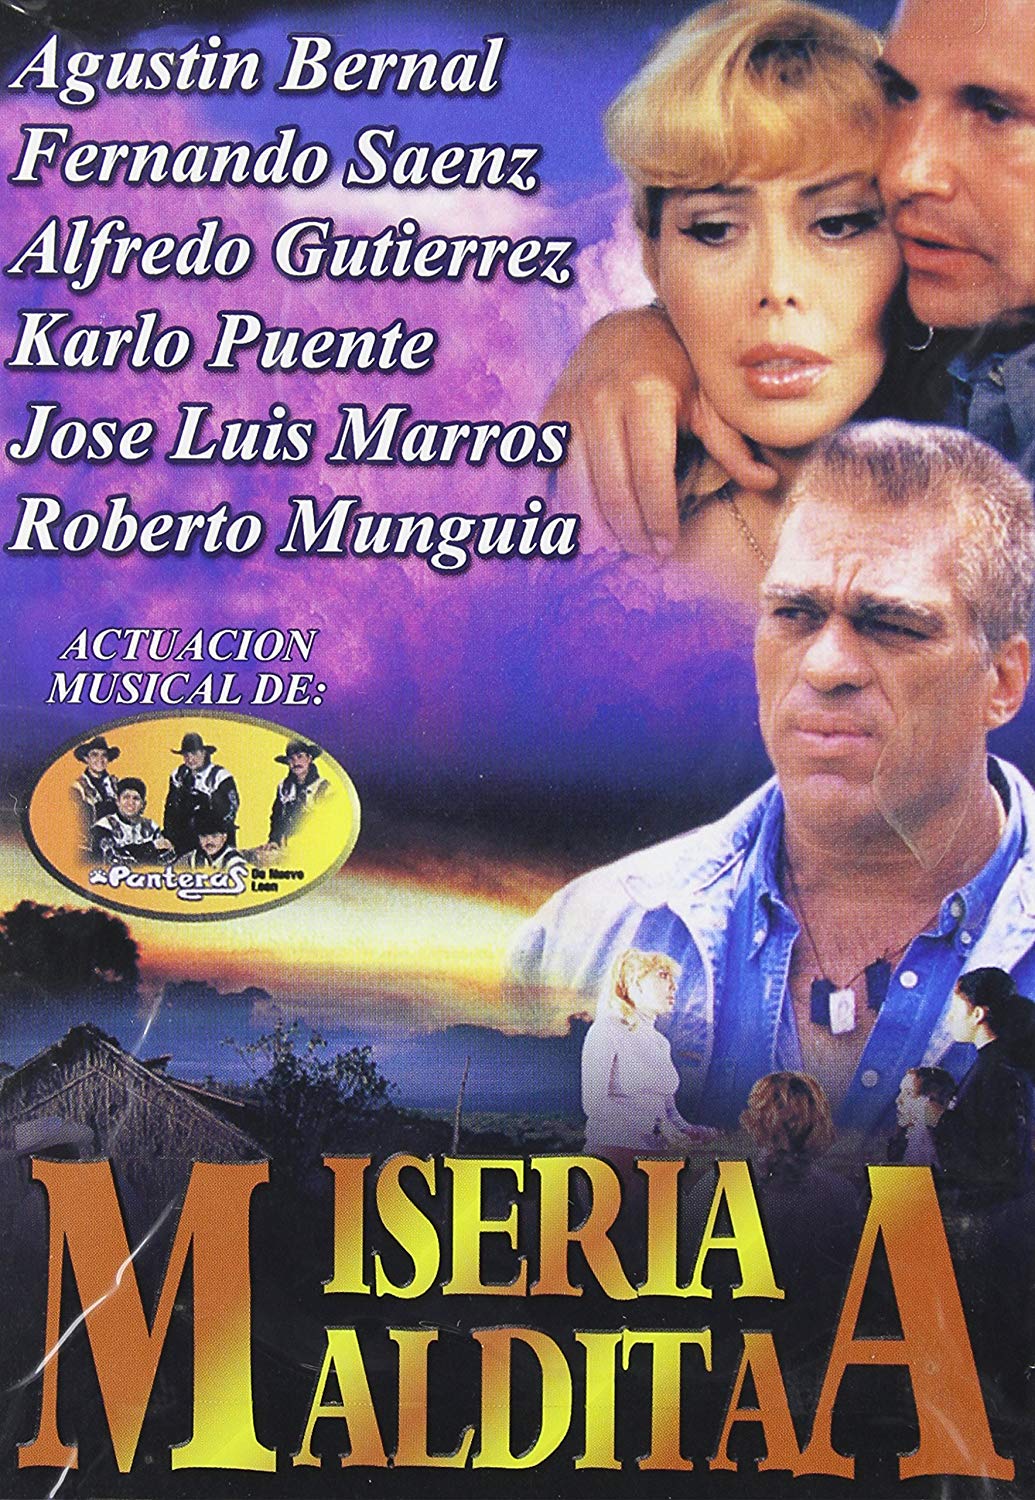 affiche du film Miseria maldita